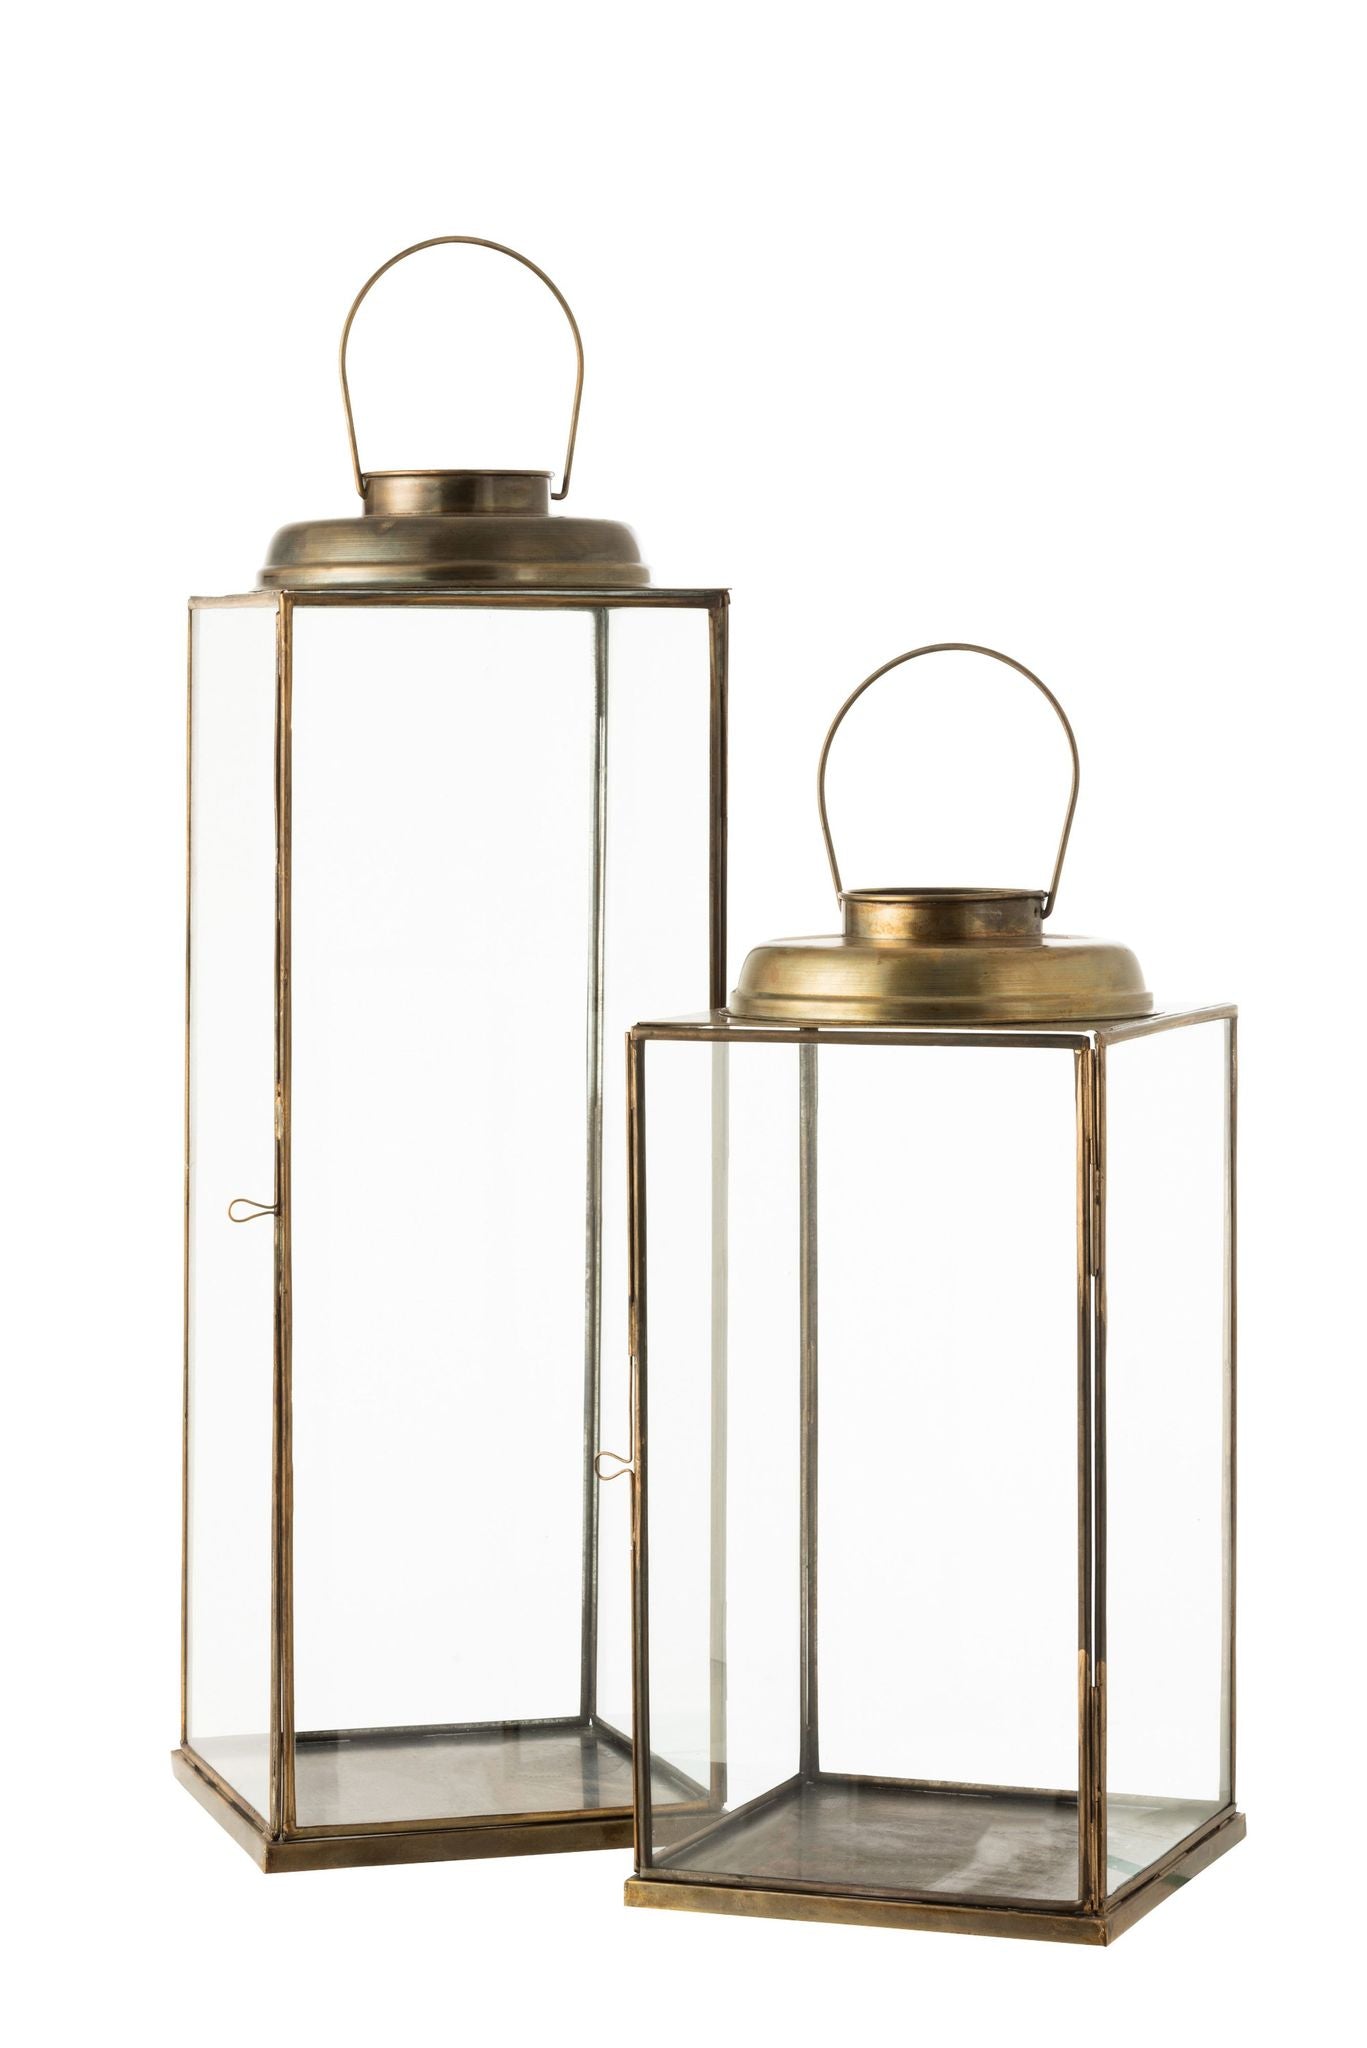 Lanterne kvadrat lav antik glas/jern bronze stor / outlet